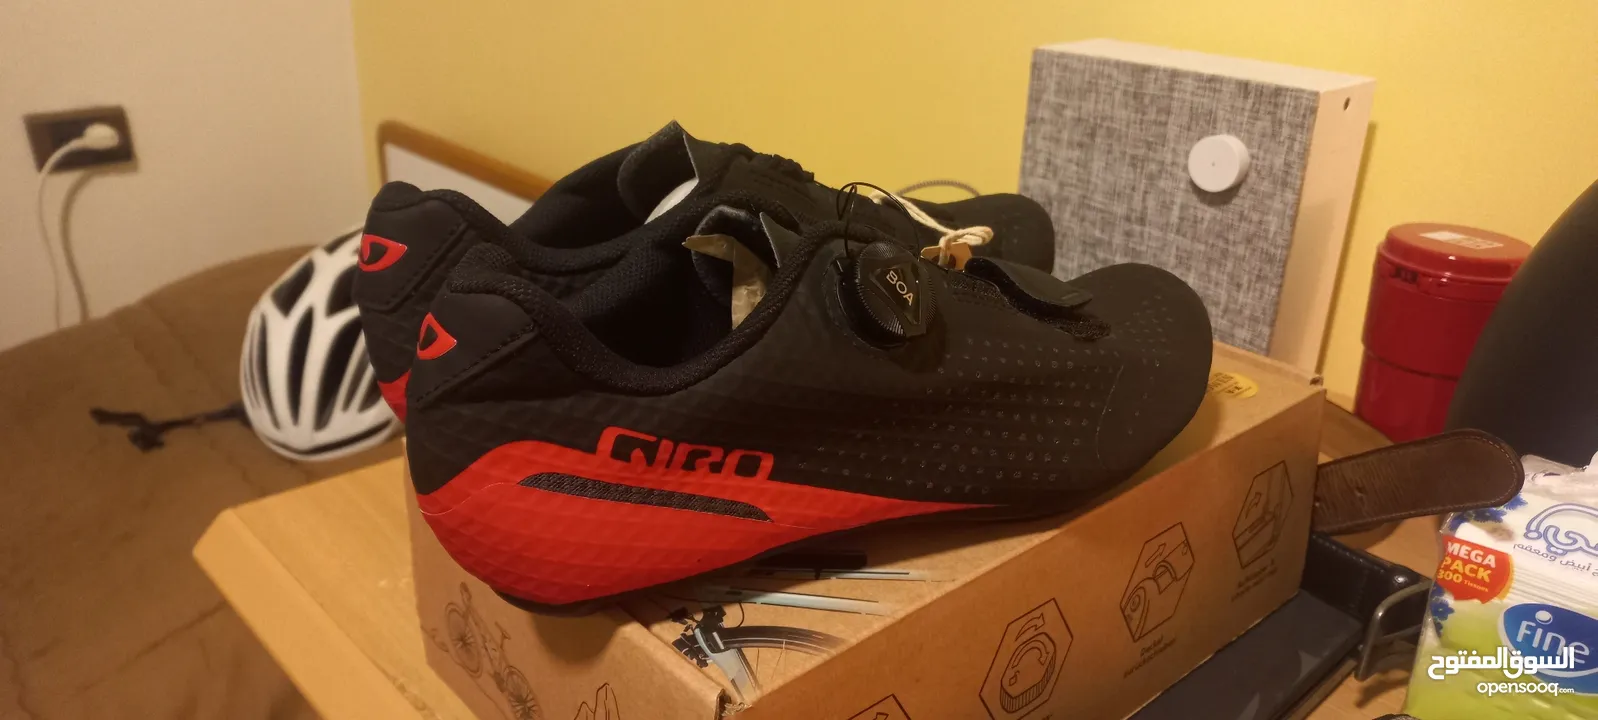 Giro Cadet Cycling Shoe size 43